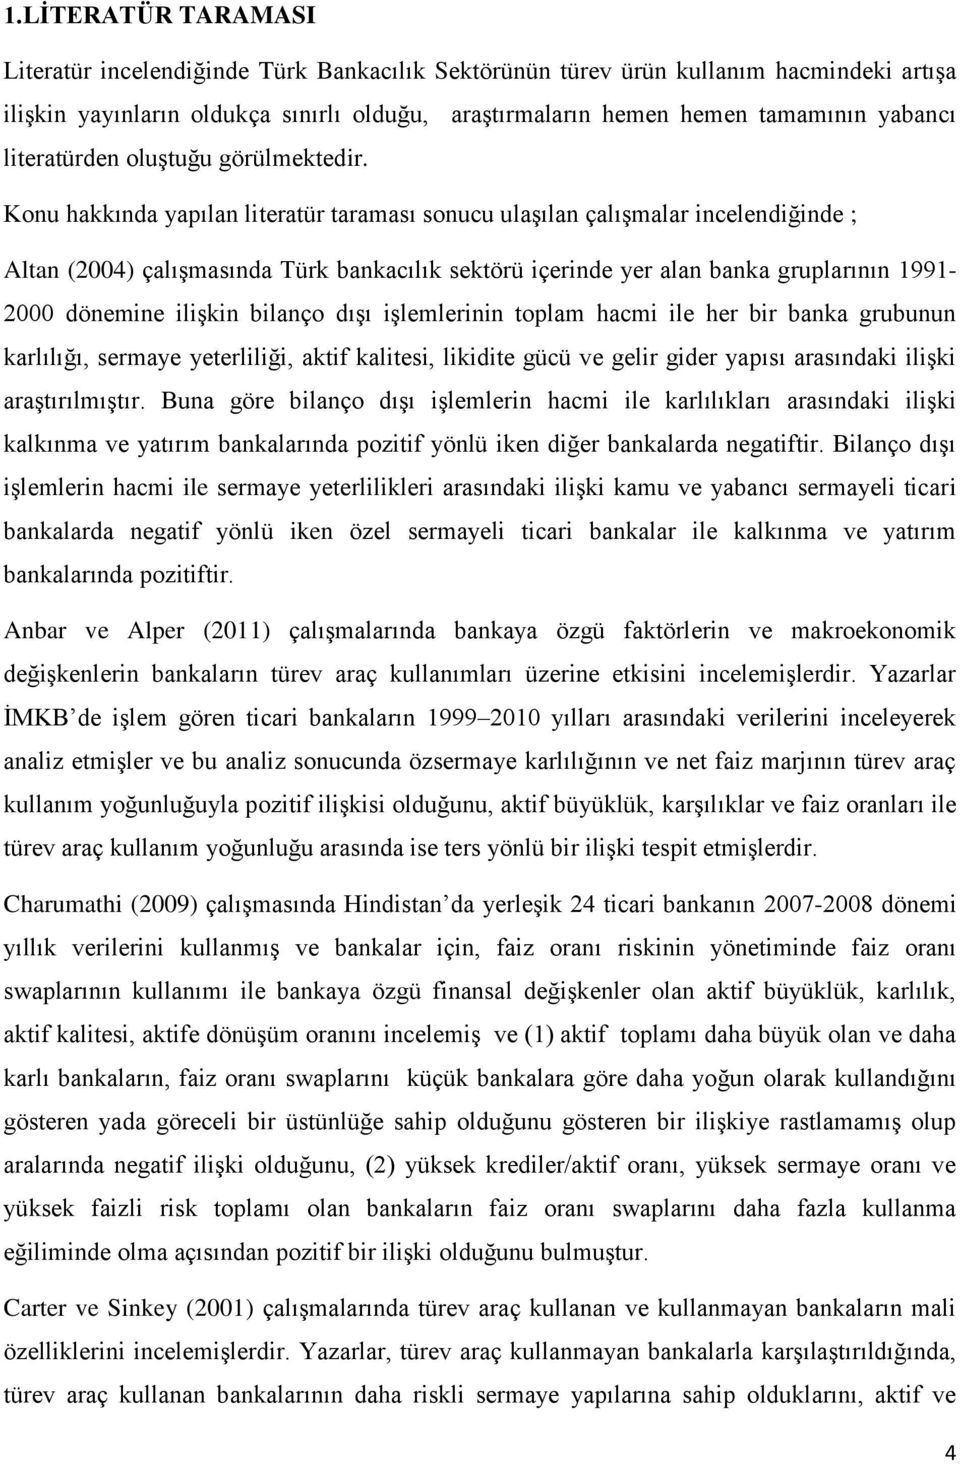 Konu hakkında yapılan literatür taraması sonucu ulaşılan çalışmalar incelendiğinde ; Altan (2004) çalışmasında Türk bankacılık sektörü içerinde yer alan banka gruplarının 1991-2000 dönemine ilişkin